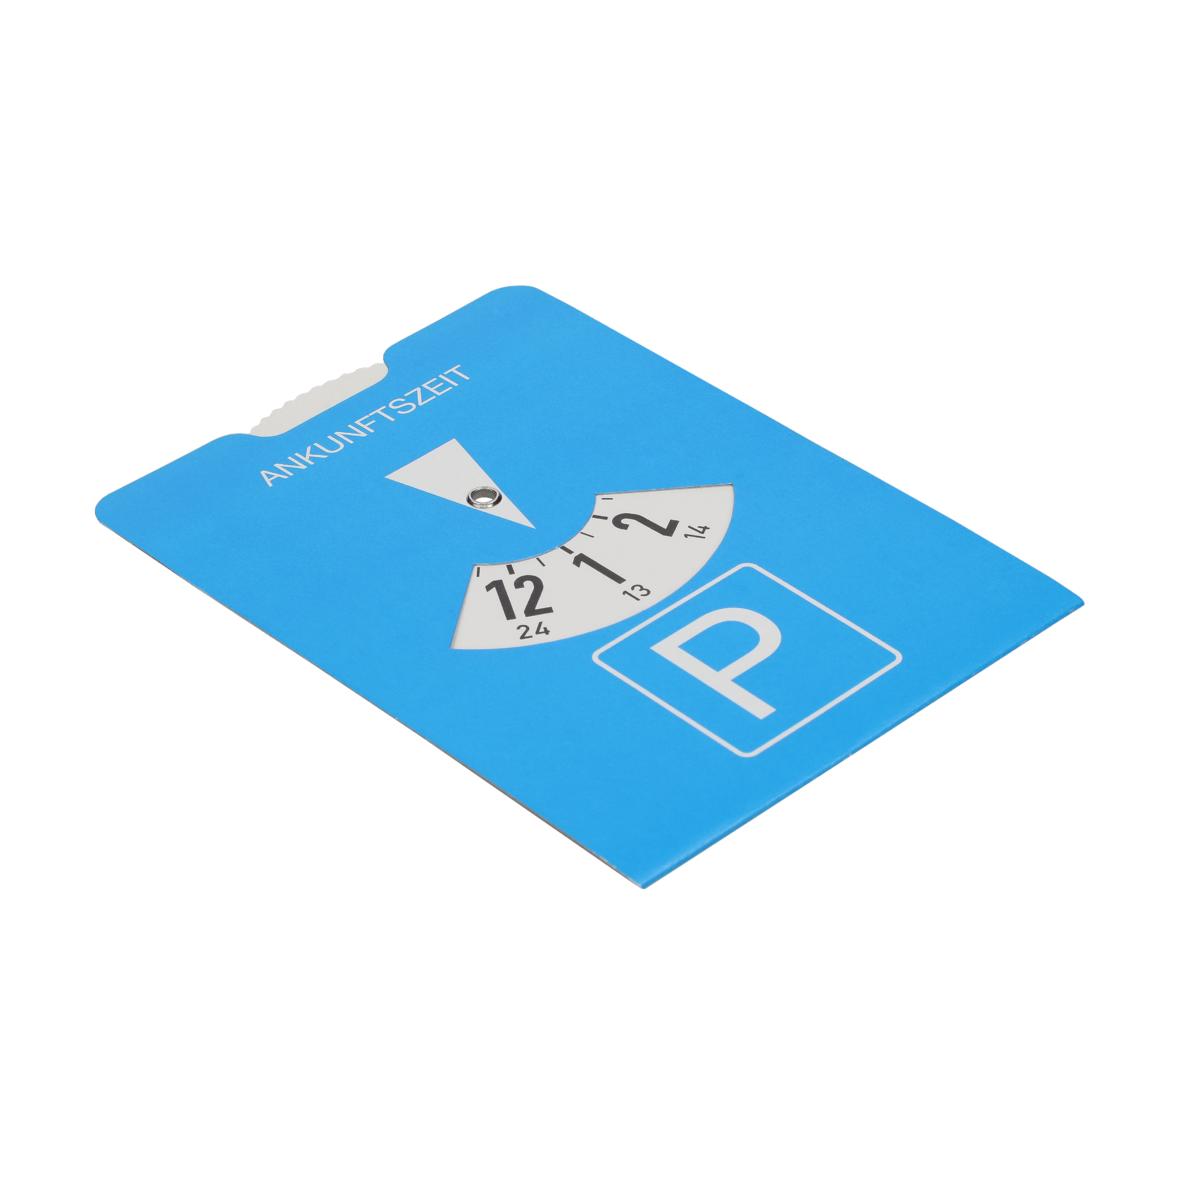 Cardboard parking disk Travel calculator, blue-05401003-10000